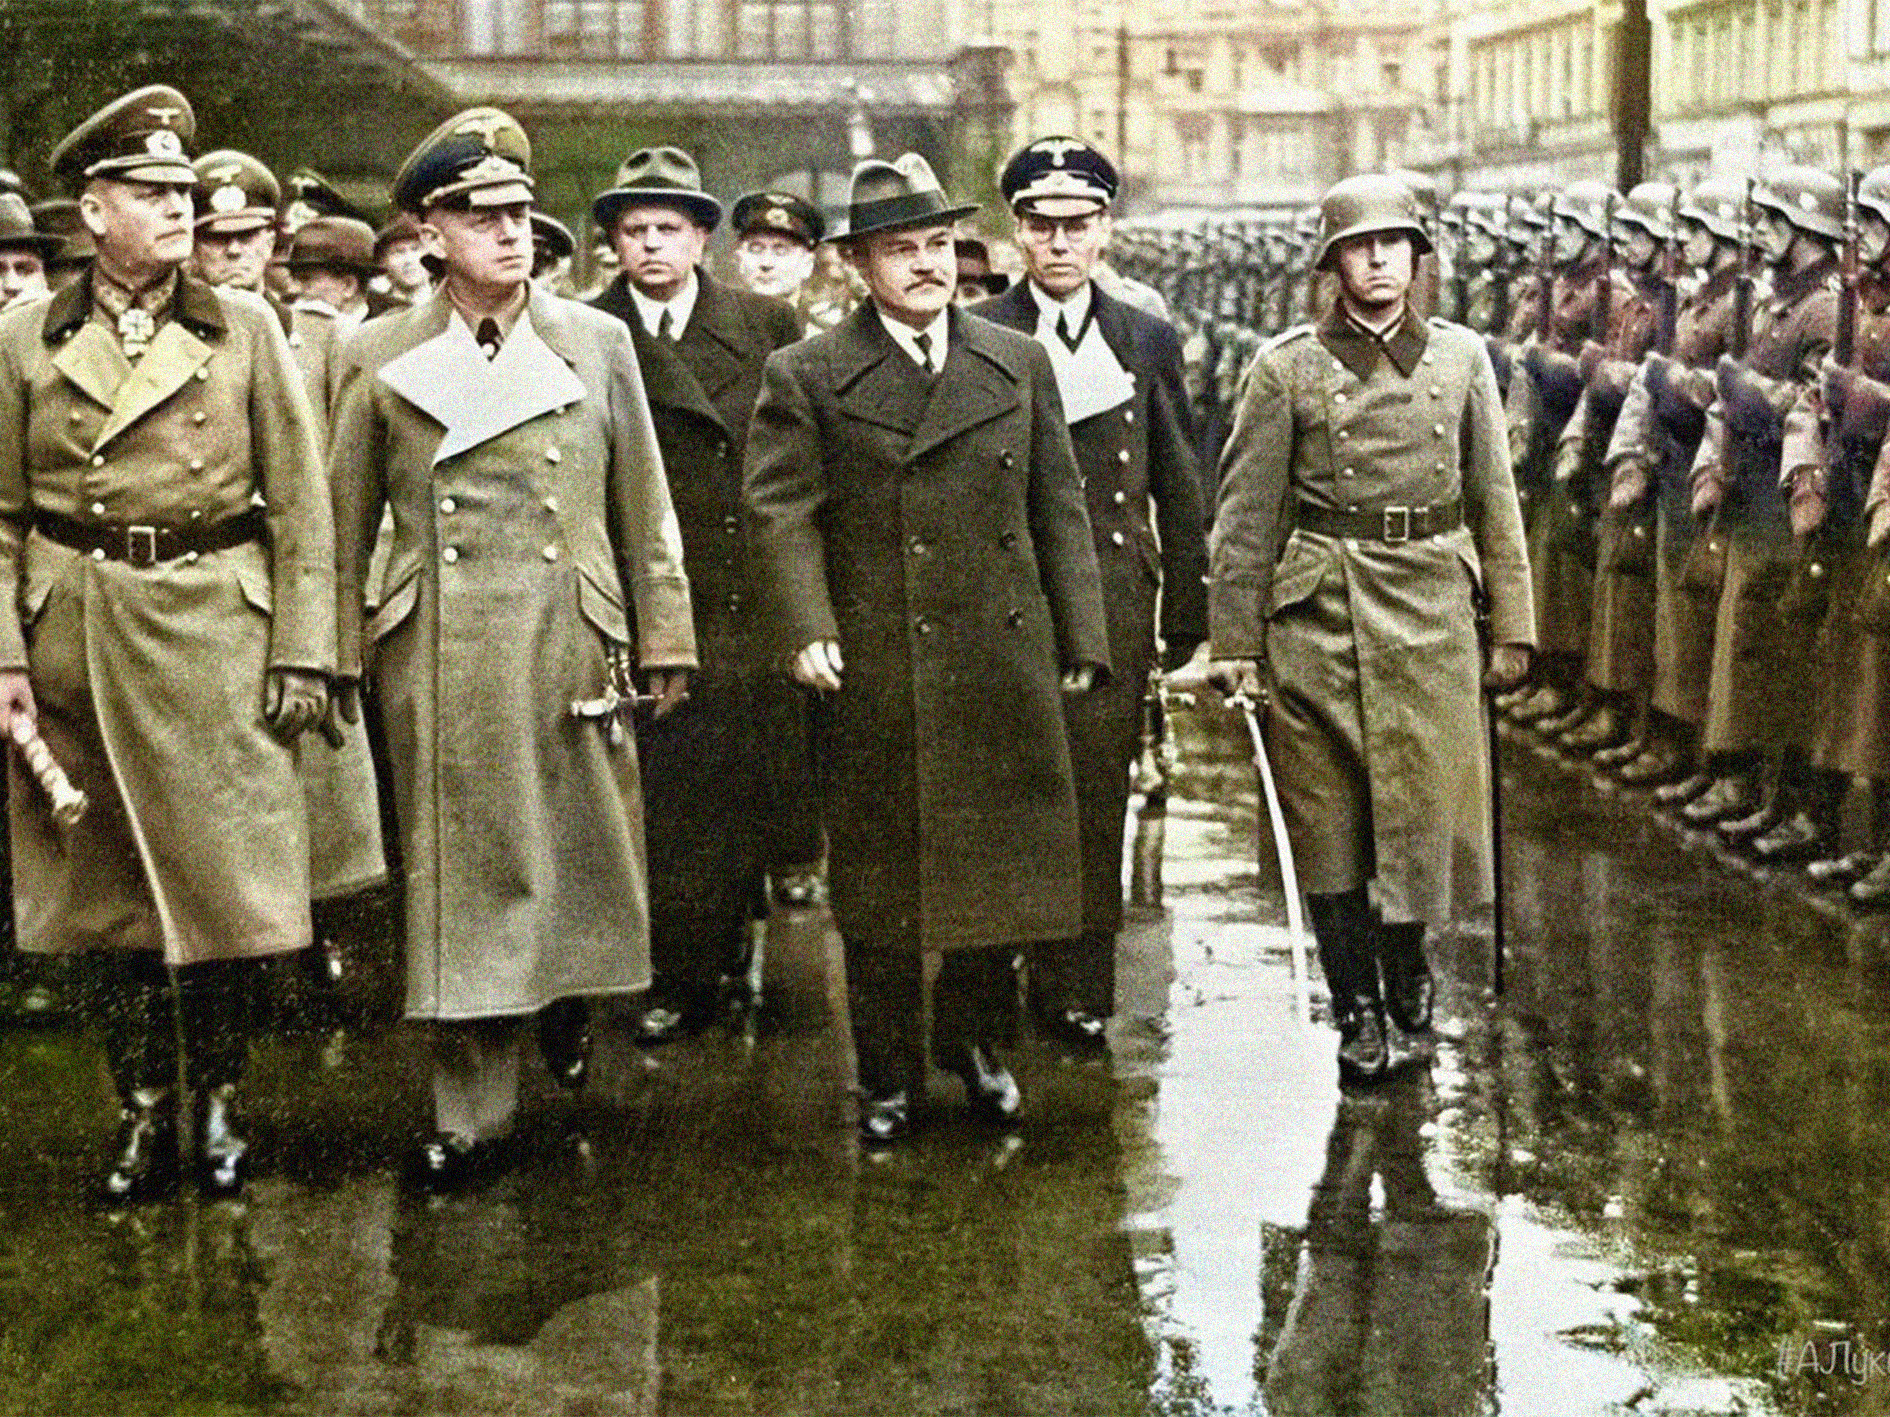 Перед сс. Молотов визит в Берлин 1940. Молотов и Риббентроп Берлин 1940. Молотов в Берлине 12 ноября 1940.